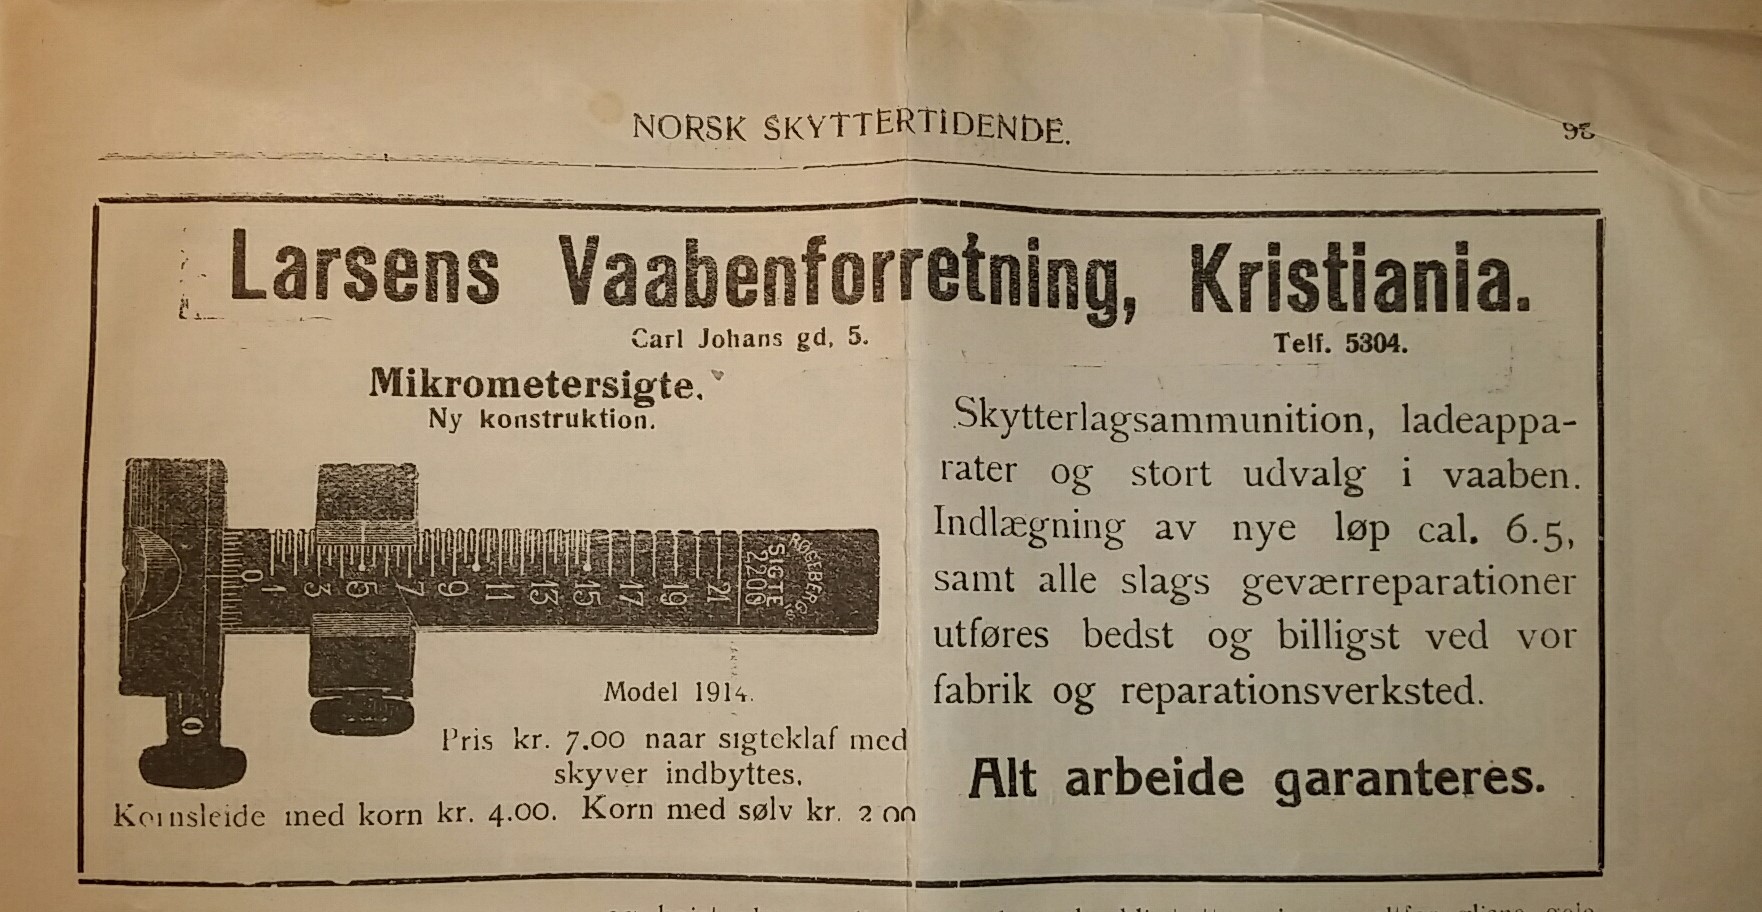 ./guns/utstyr/bilder/Utstyr-Krag-Mikrometersikte-Norsk-Skyttertidene-22mars1916-2.jpg